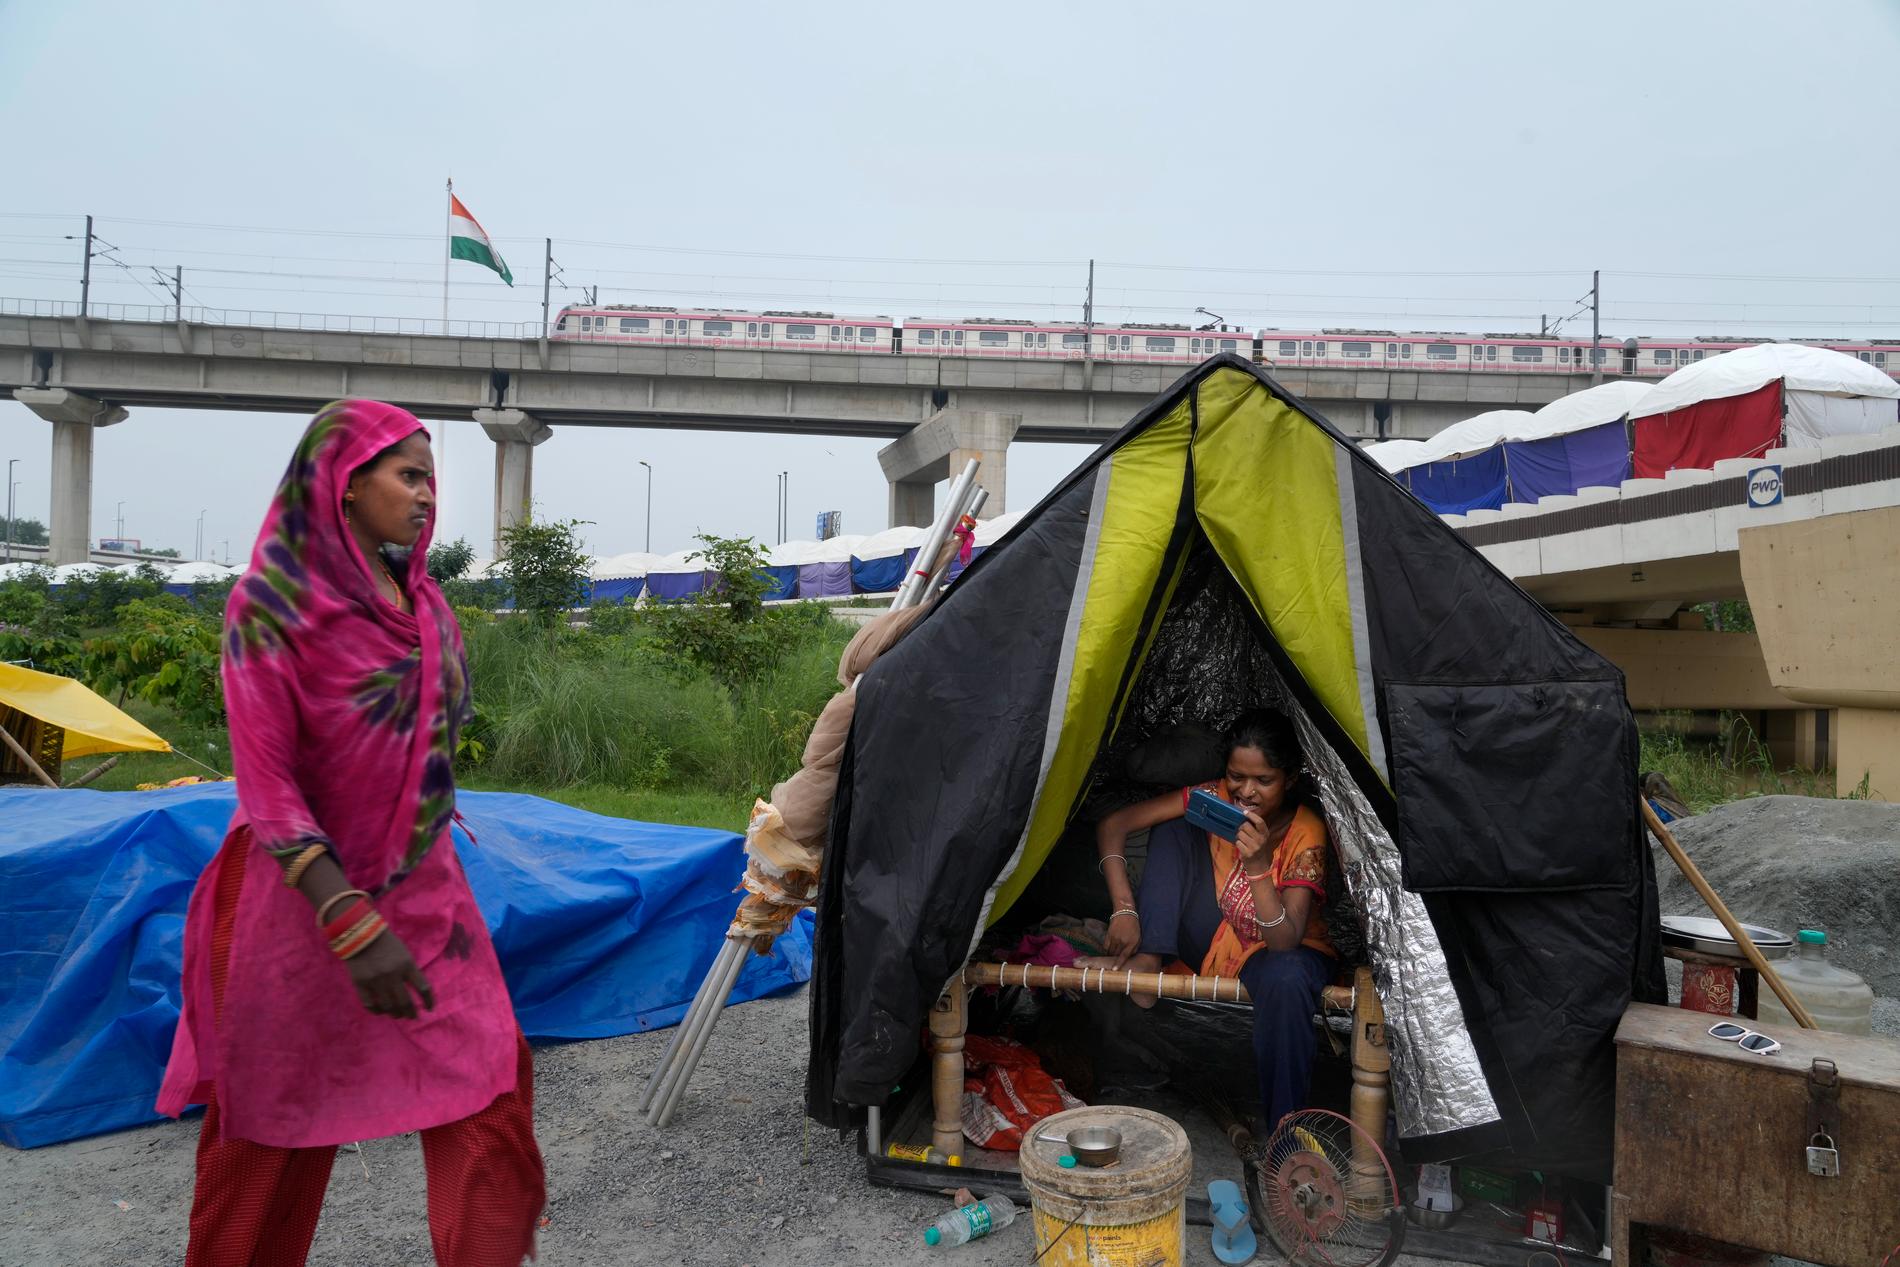 Den översvämmade Jamunafloden tvingar människor att lämna sina hem i New Delhi och upprätta tillfälliga boenden.